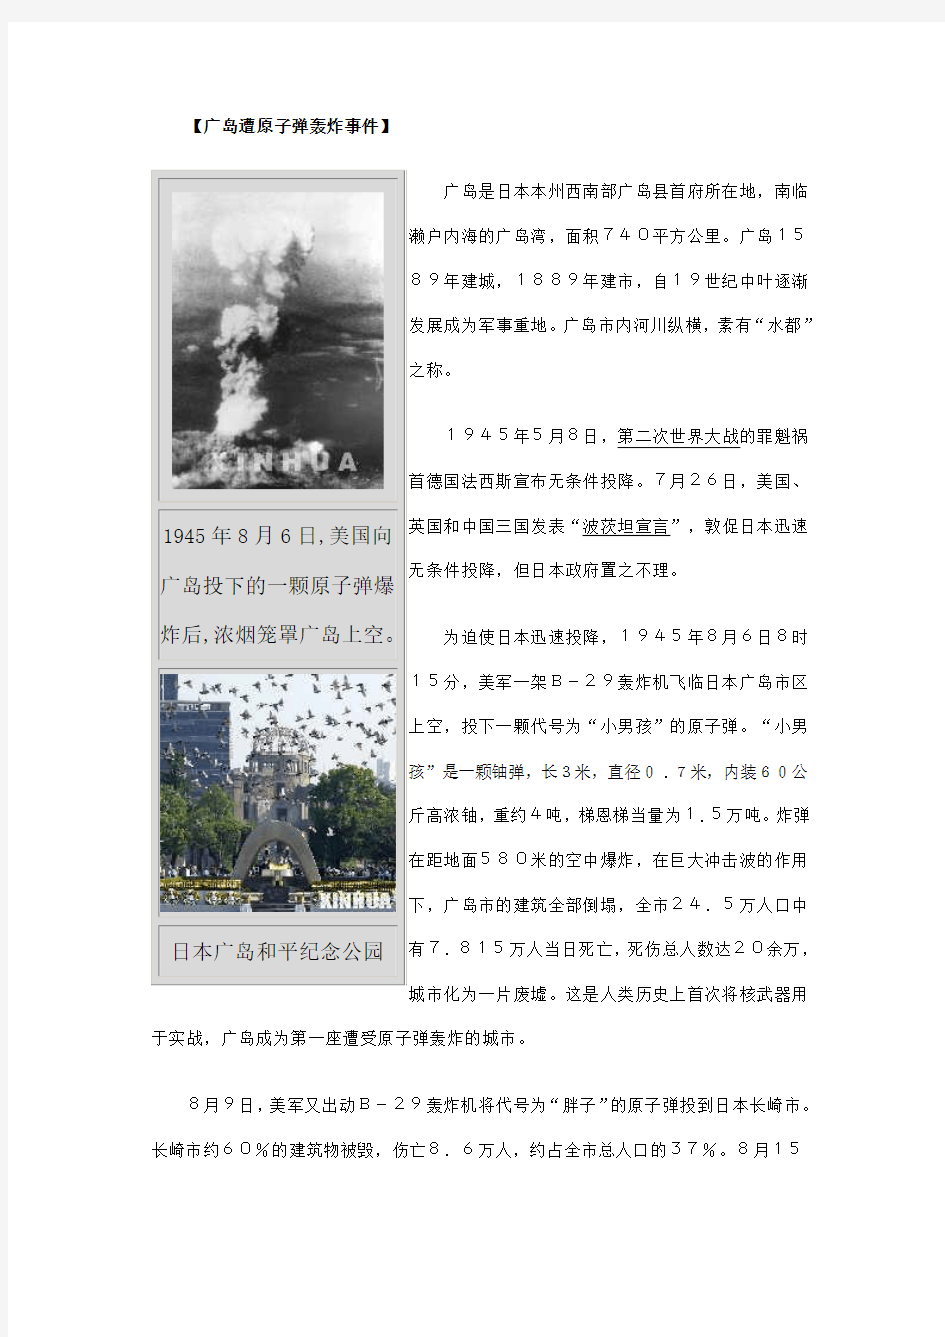 日本广岛、长崎原子弹爆炸事件